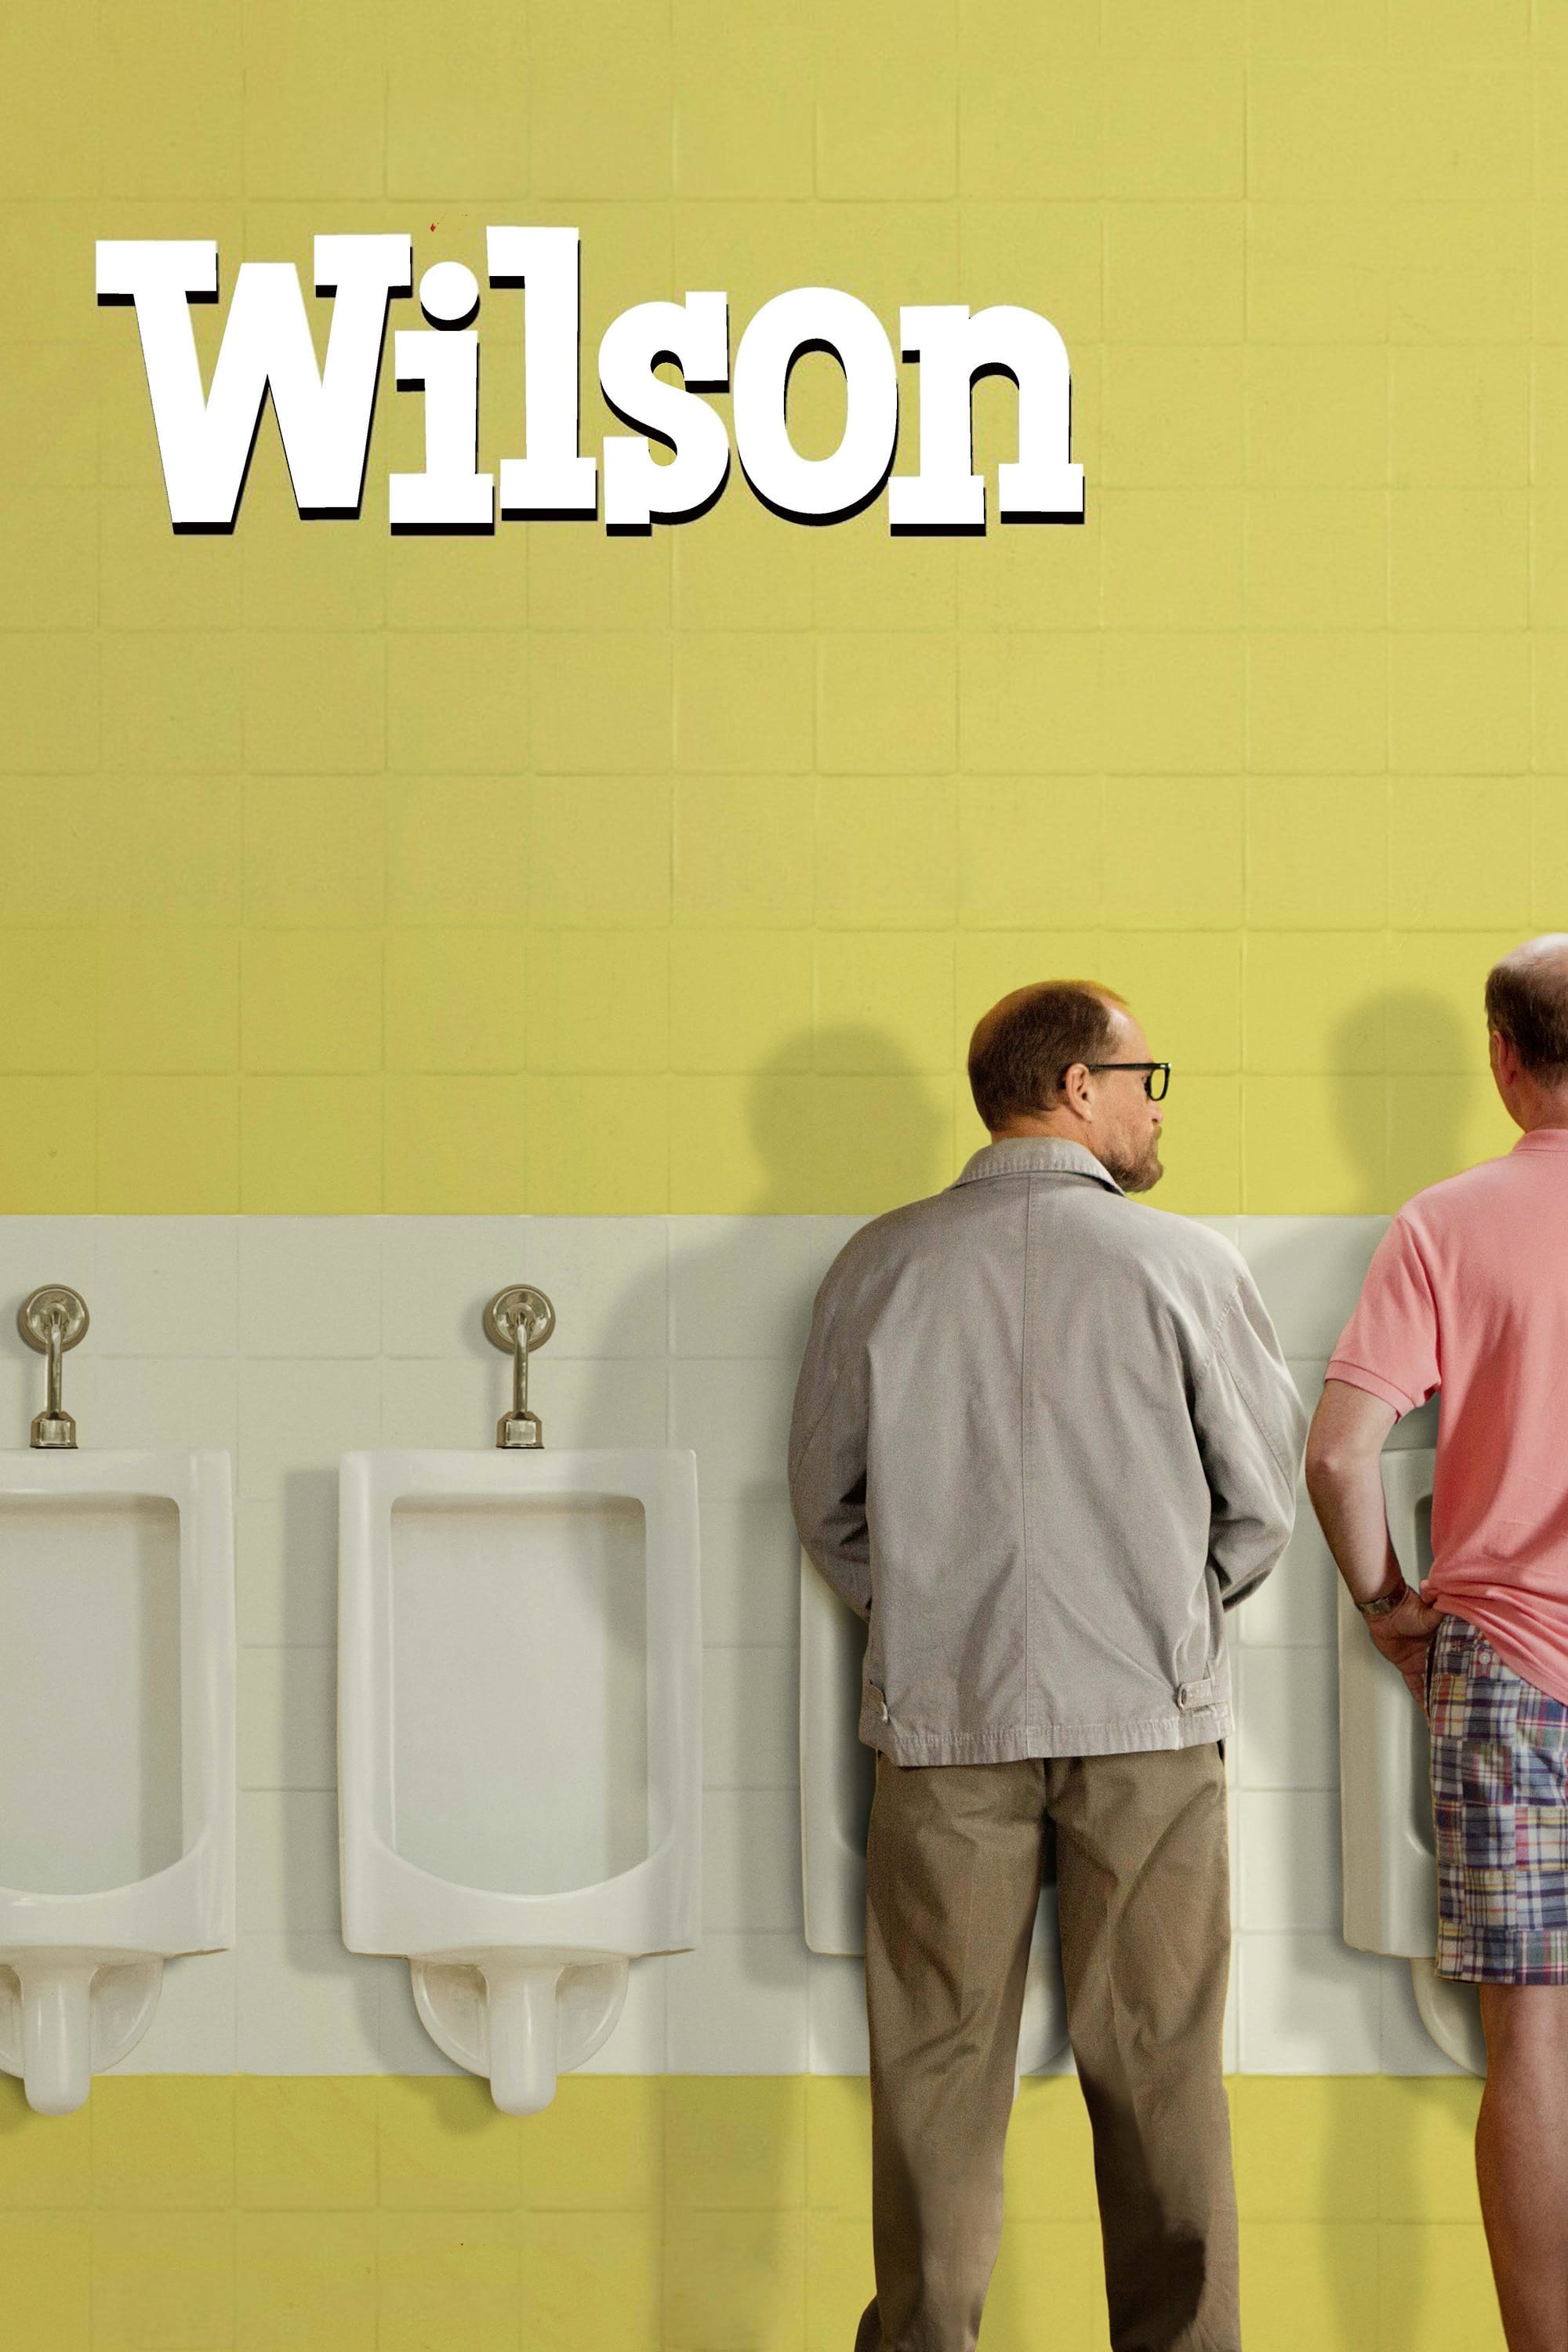 Wilson - Der Weltverbesserer (2017)